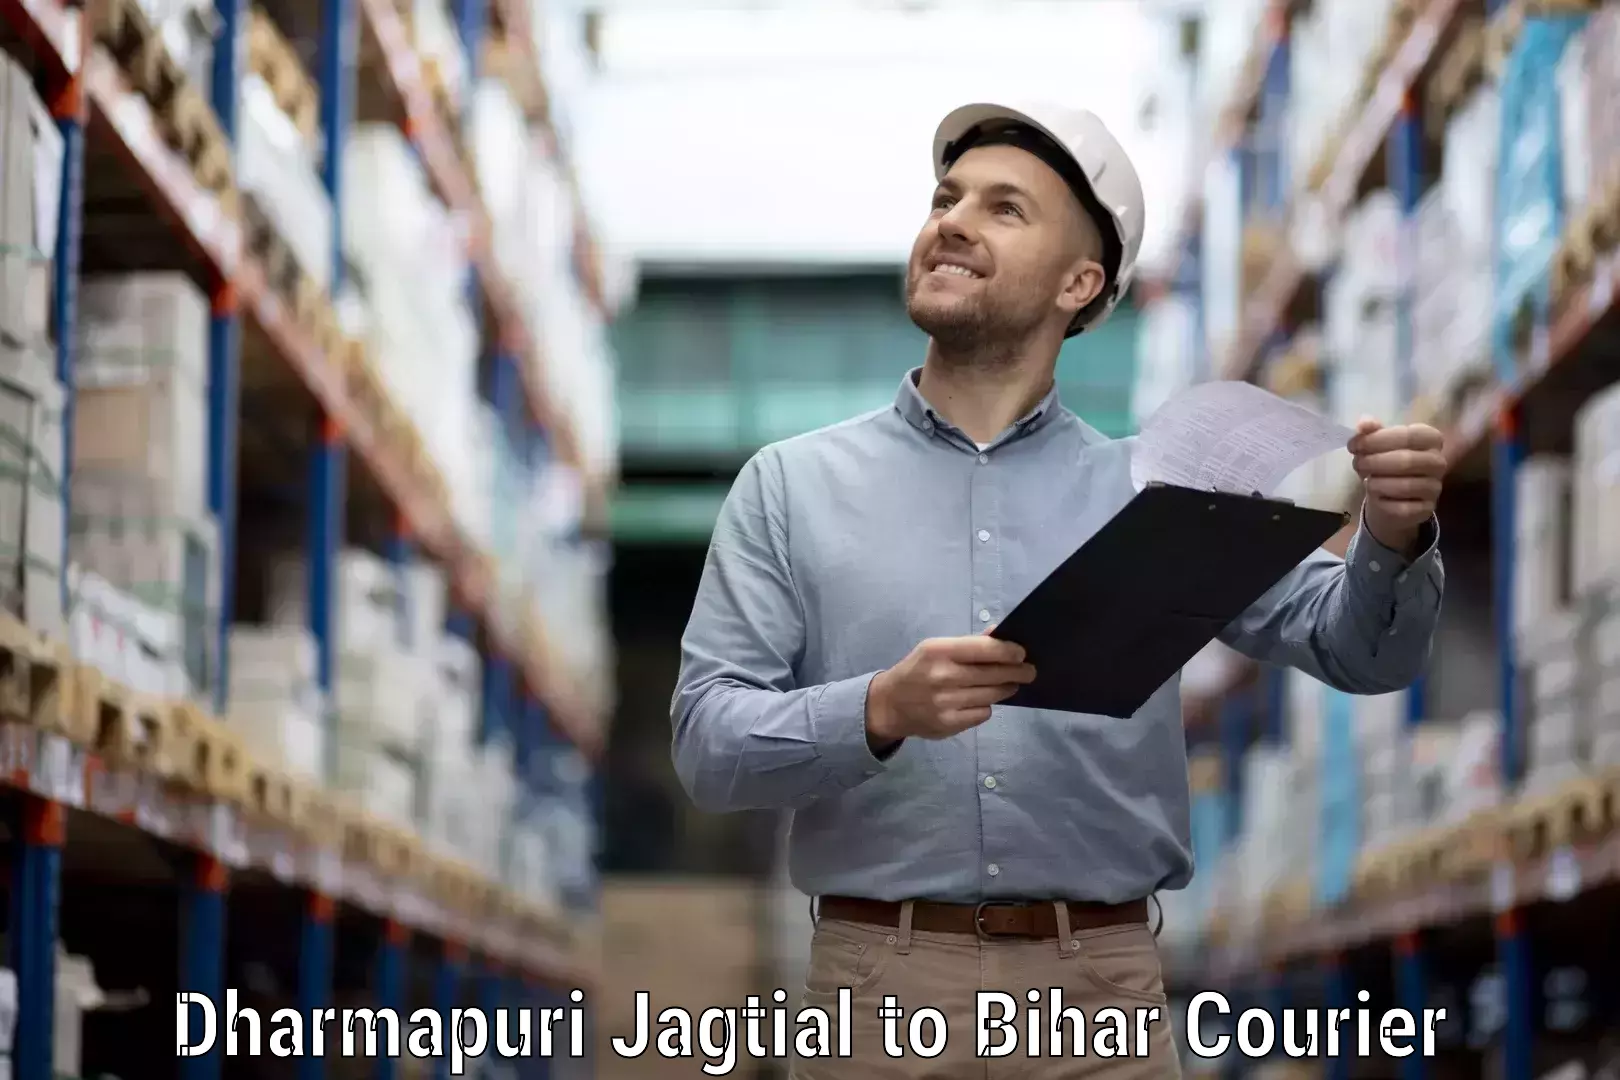 International courier networks Dharmapuri Jagtial to Bharwara